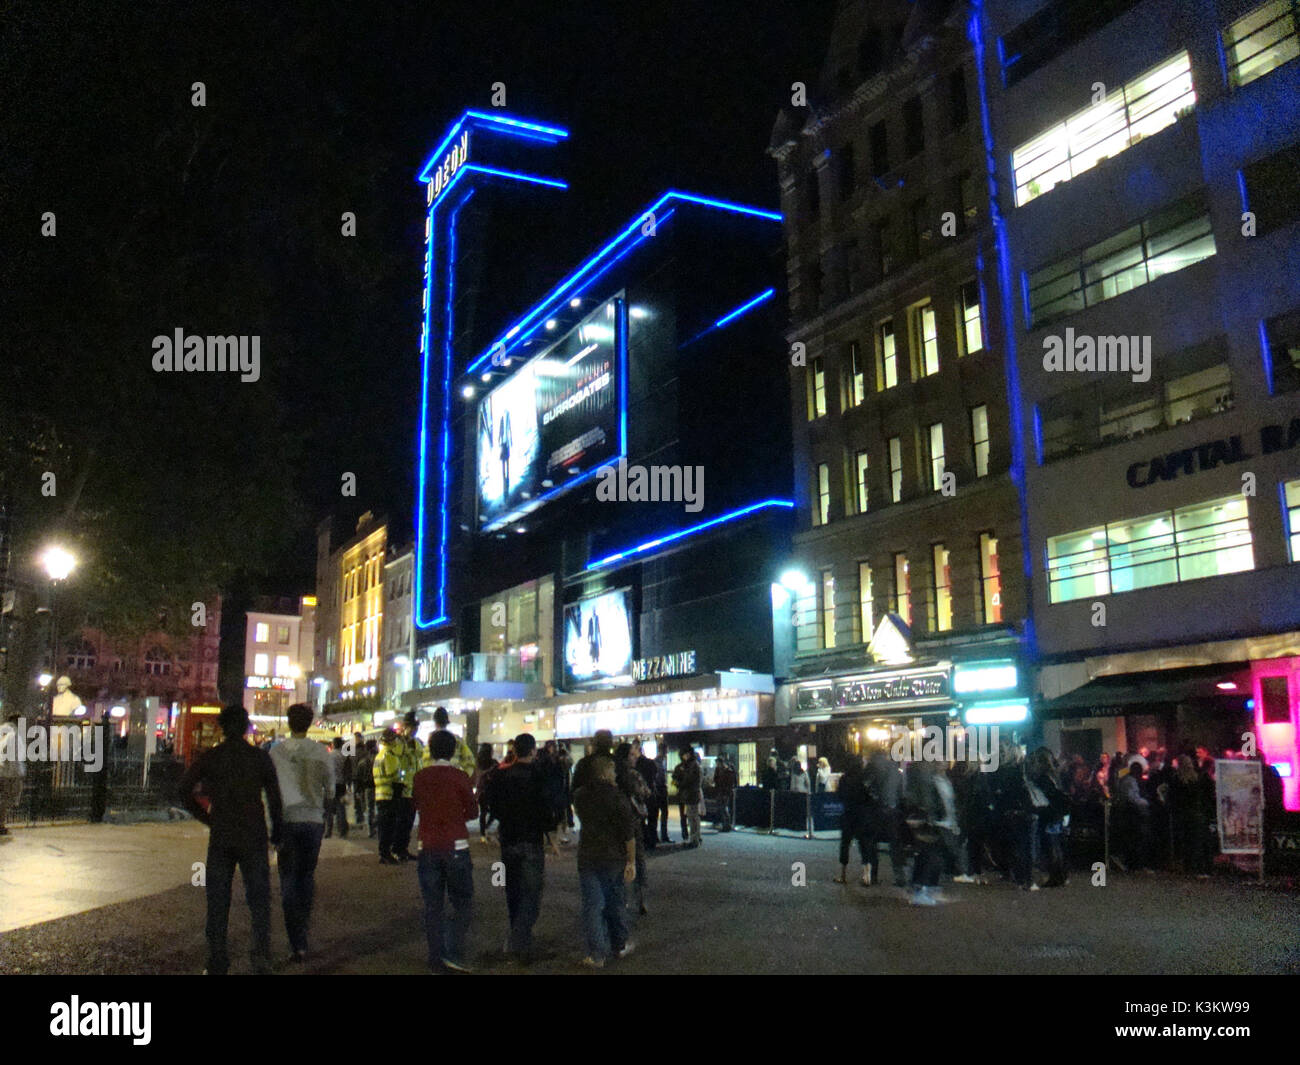 L'avant du cinéma Odeon Leicester Square, Londres, au niveau de la rue, photo de nuit vu en septembre 2009, "Dépistage des éléments auxiliaires Banque D'Images